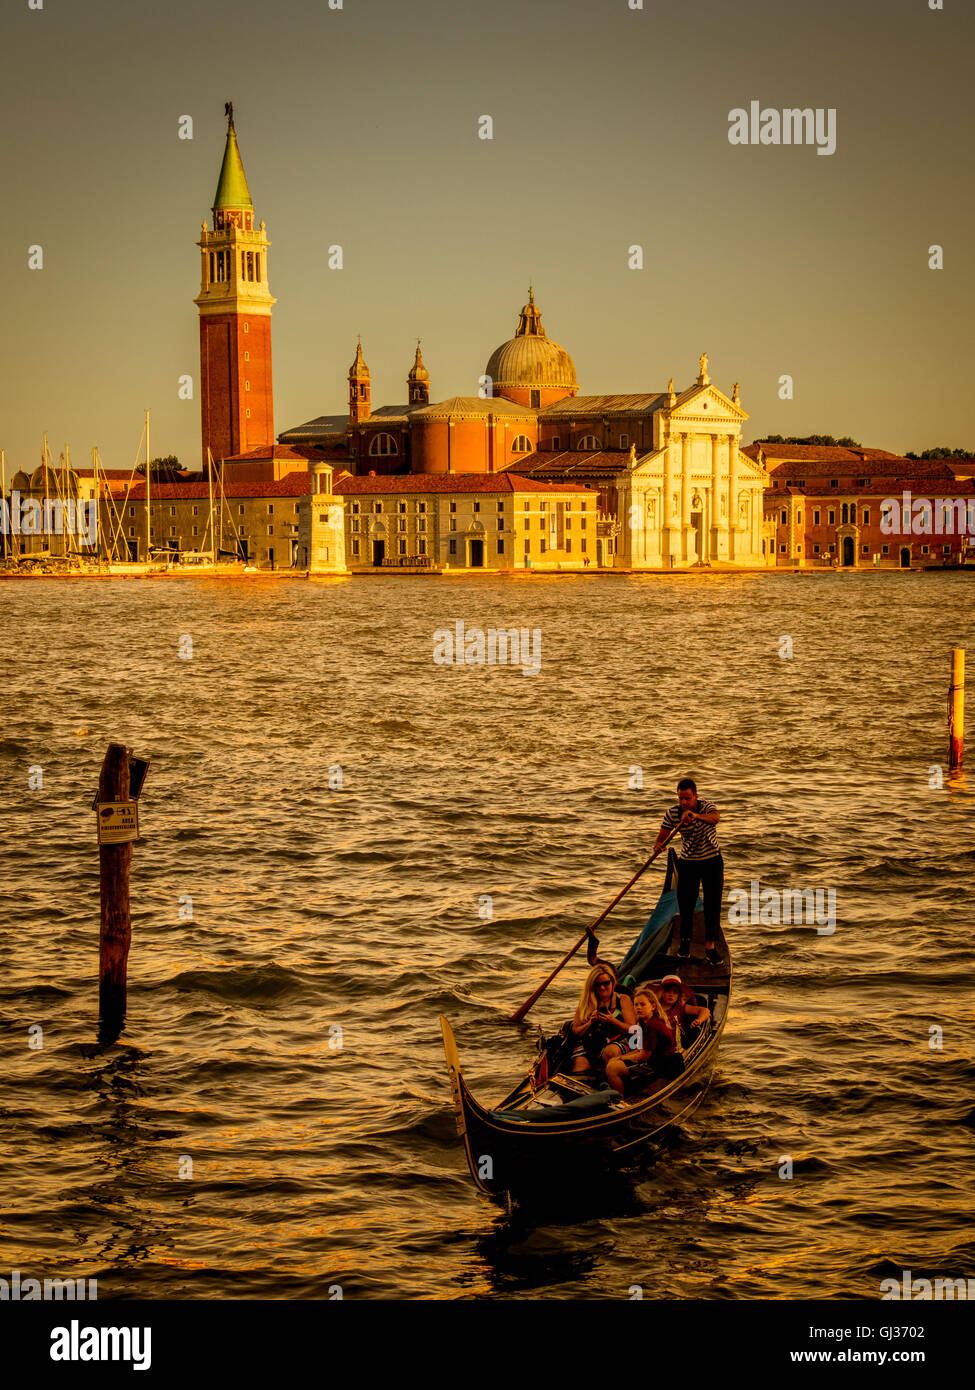 Einzelne Gondel Canale di San Marco, bei Sonnenuntergang mit der Insel San Giorgio Maggiore im Hintergrund. Venedig, Italien. Stockfoto